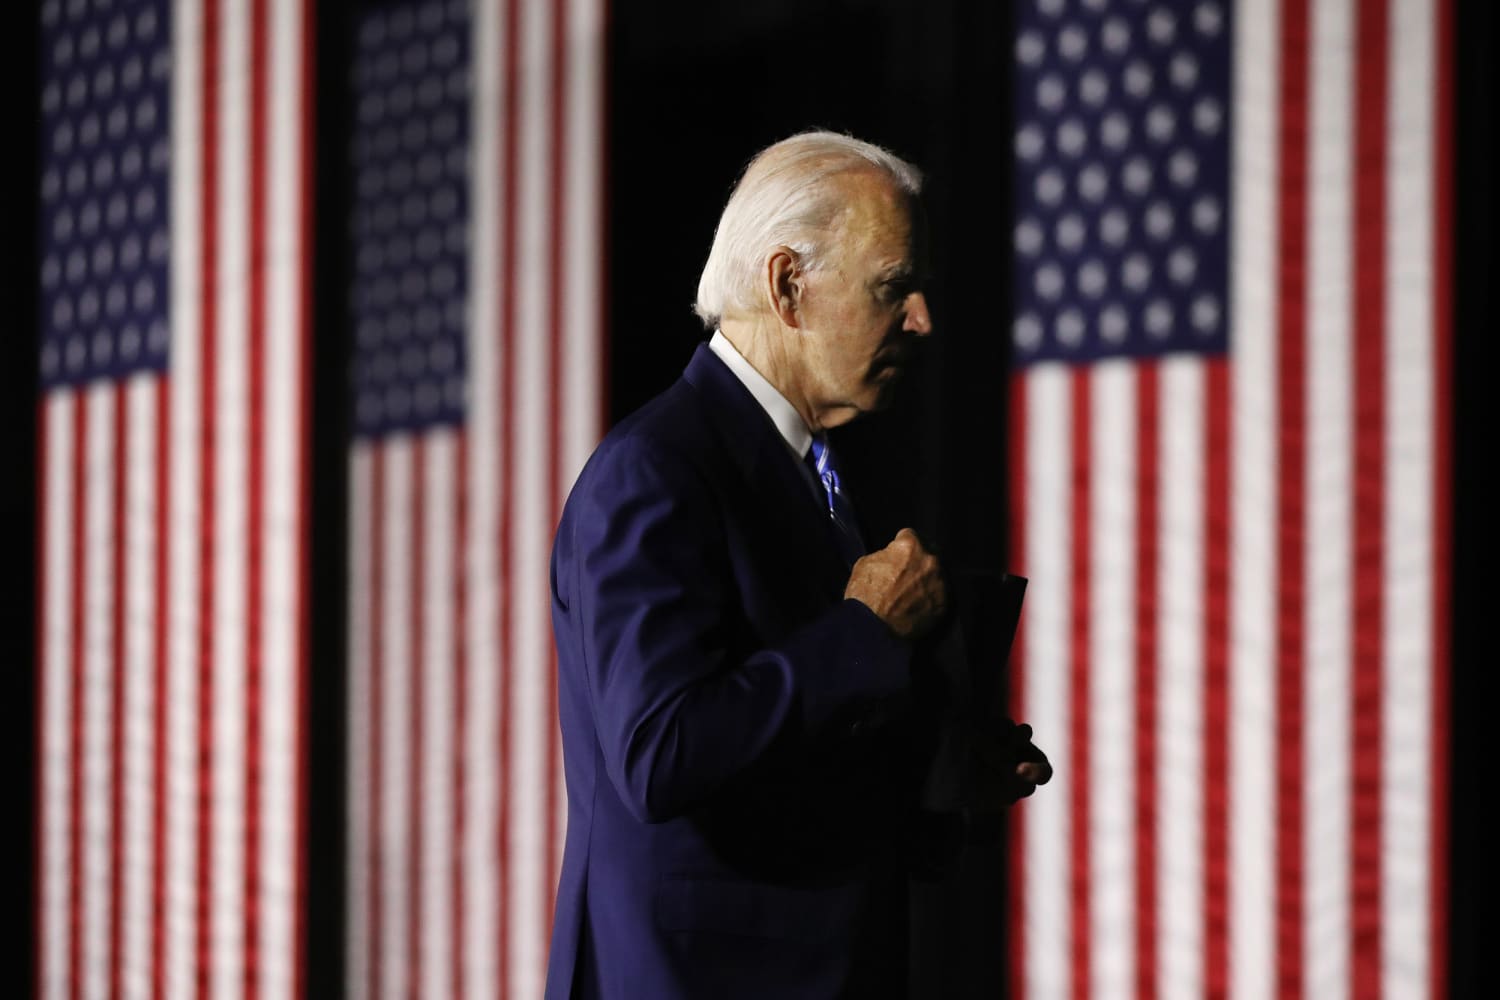 slange damper får Despite polling lead, Biden still has work to do with Black and younger  voters